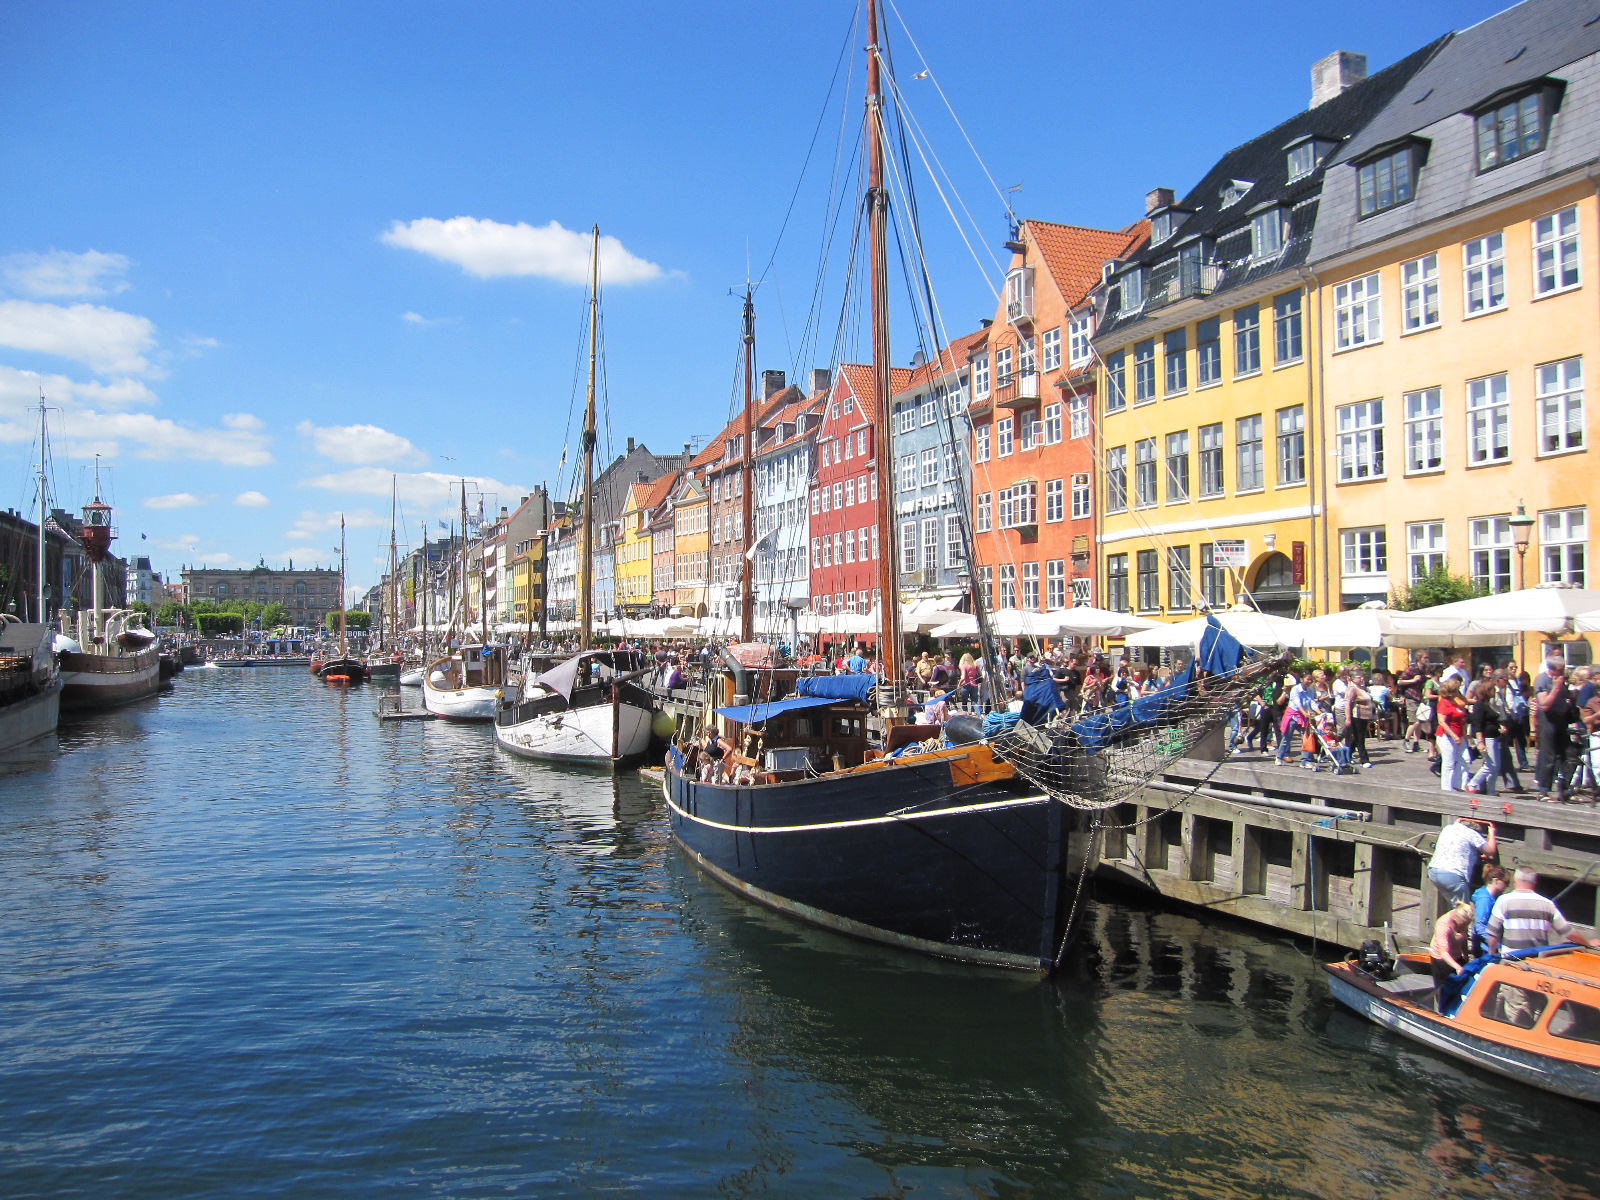 alt="Städtetrips Kopenhagen, Blick auf Neuer Hafen"